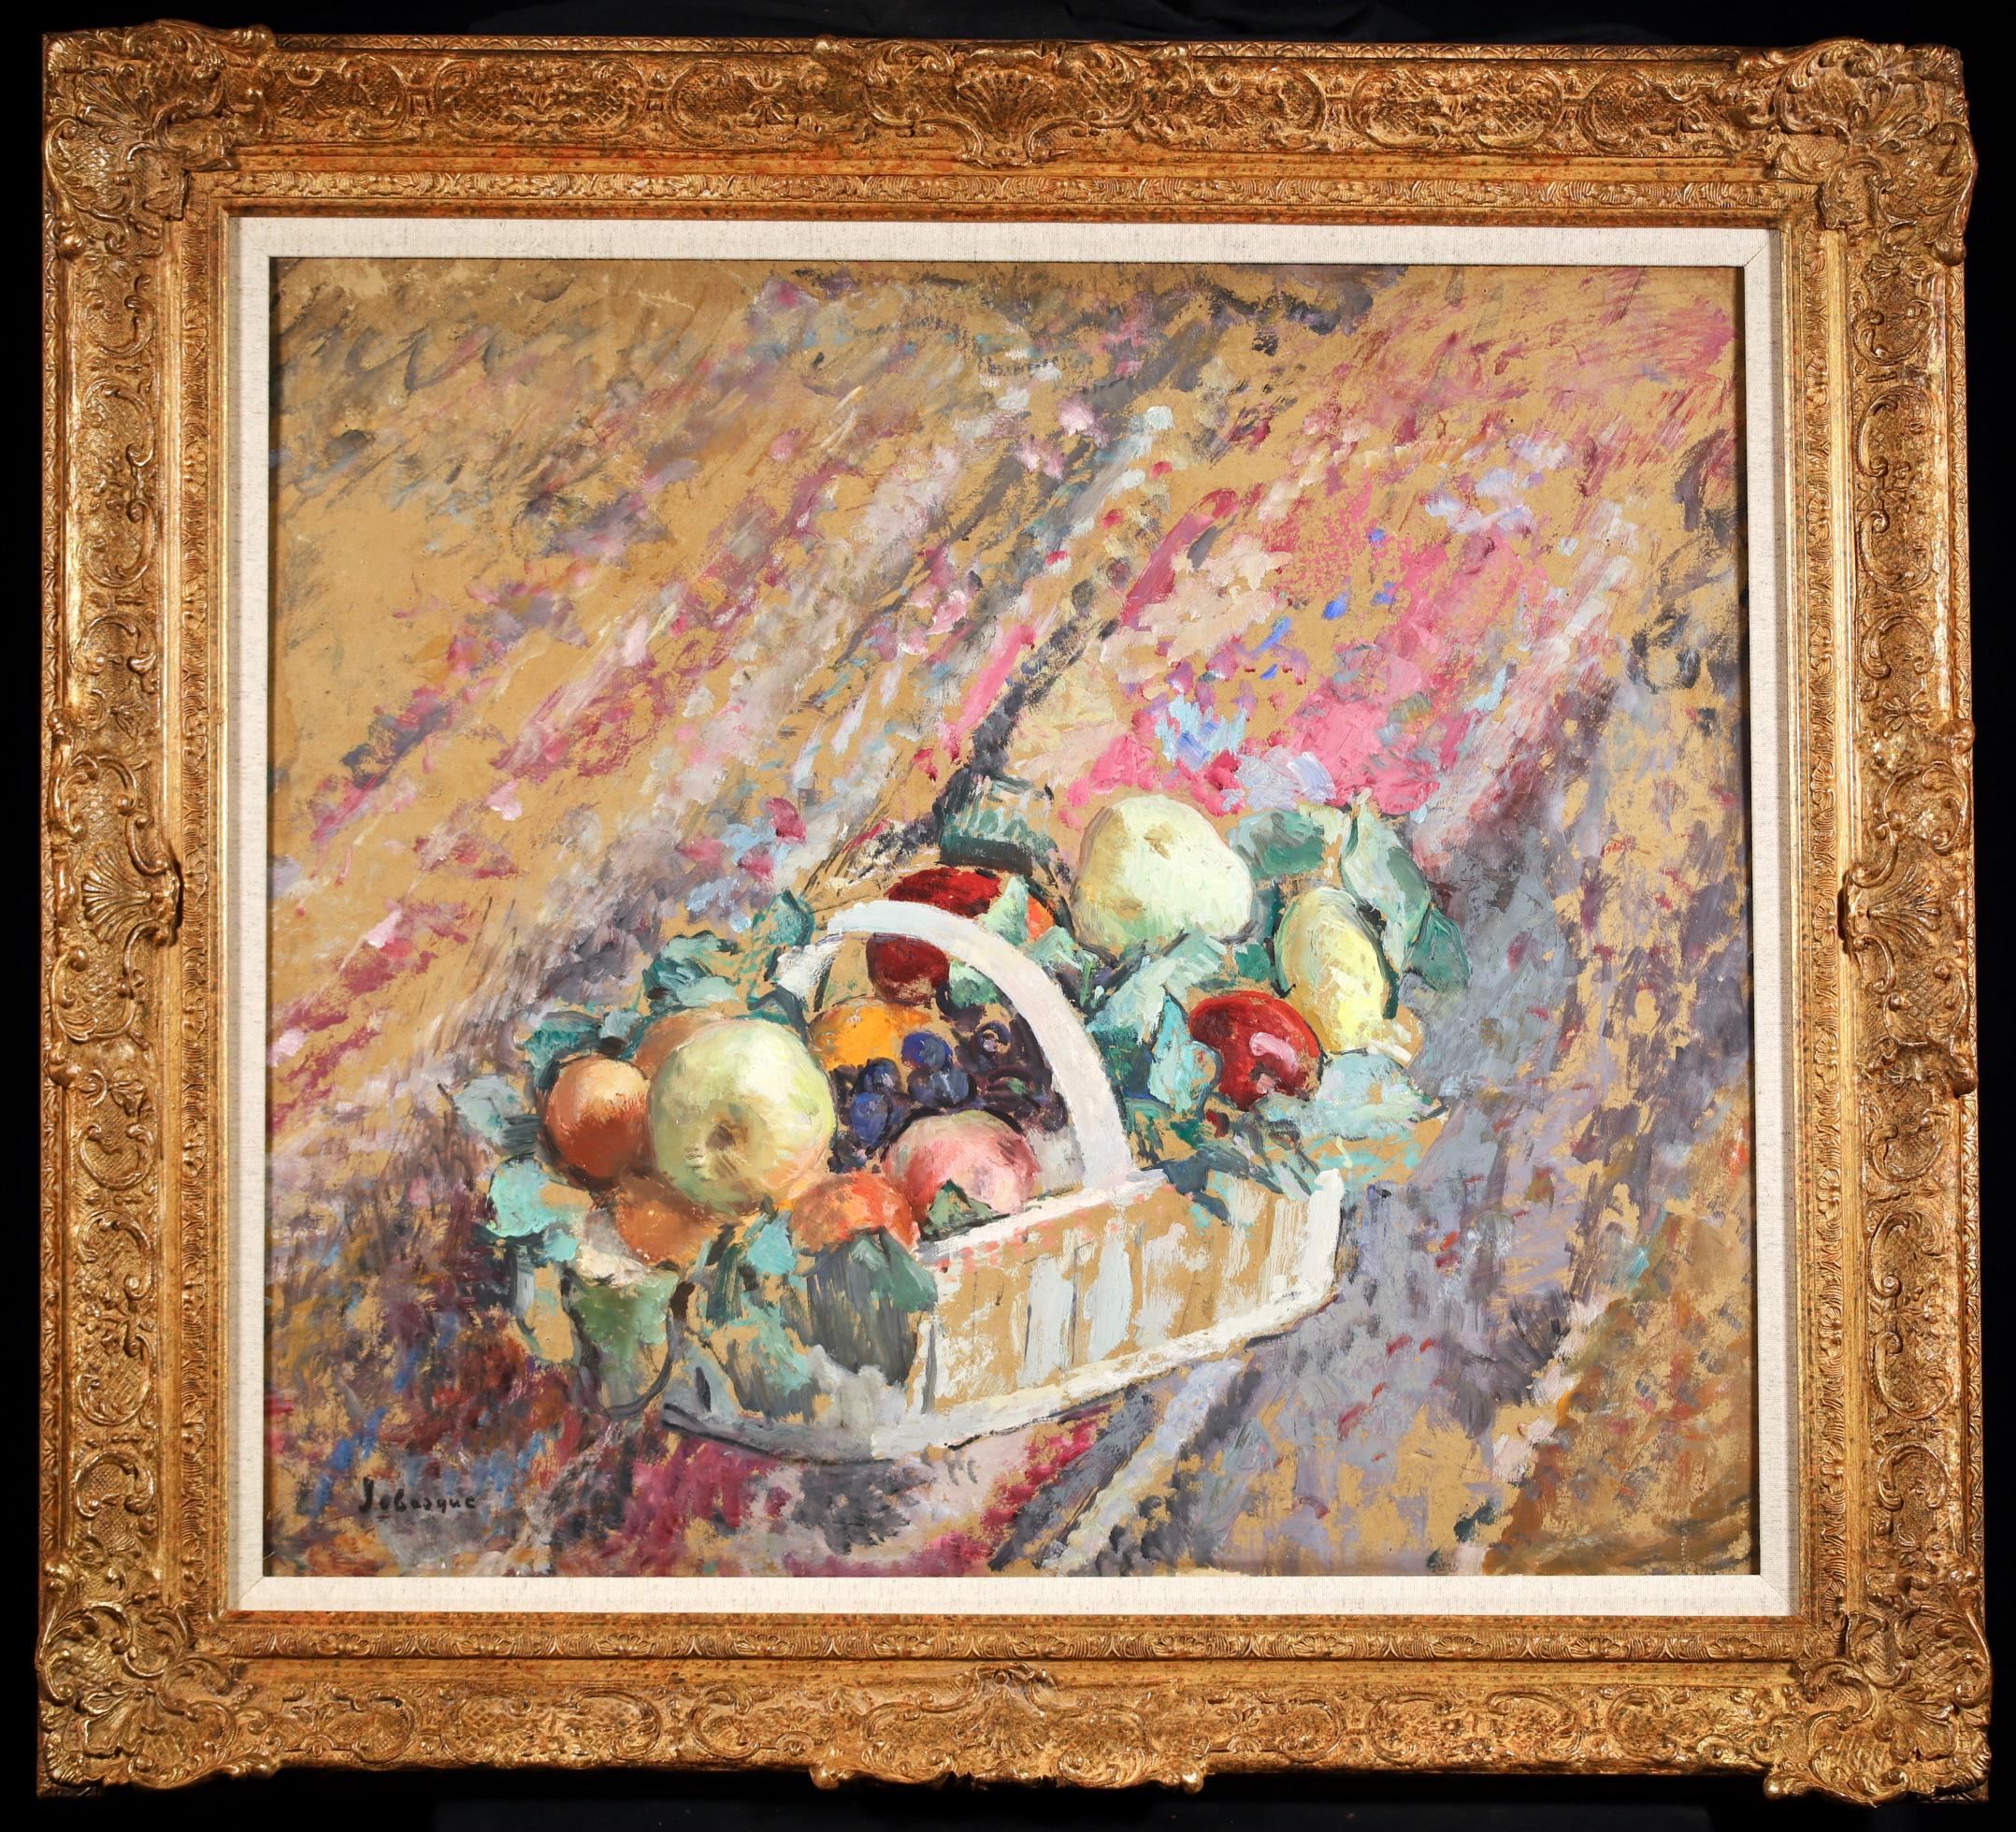 Signiertes Stillleben in Öl auf Karton, ca. 1937, von dem französischen postimpressionistischen Maler Henri Lebasque. Das Werk zeigt einen mit Äpfeln, Trauben und Orangen gefüllten Obstkorb.

Unterschrift:
Signiert unten links

Abmessungen:
Gerahmt: